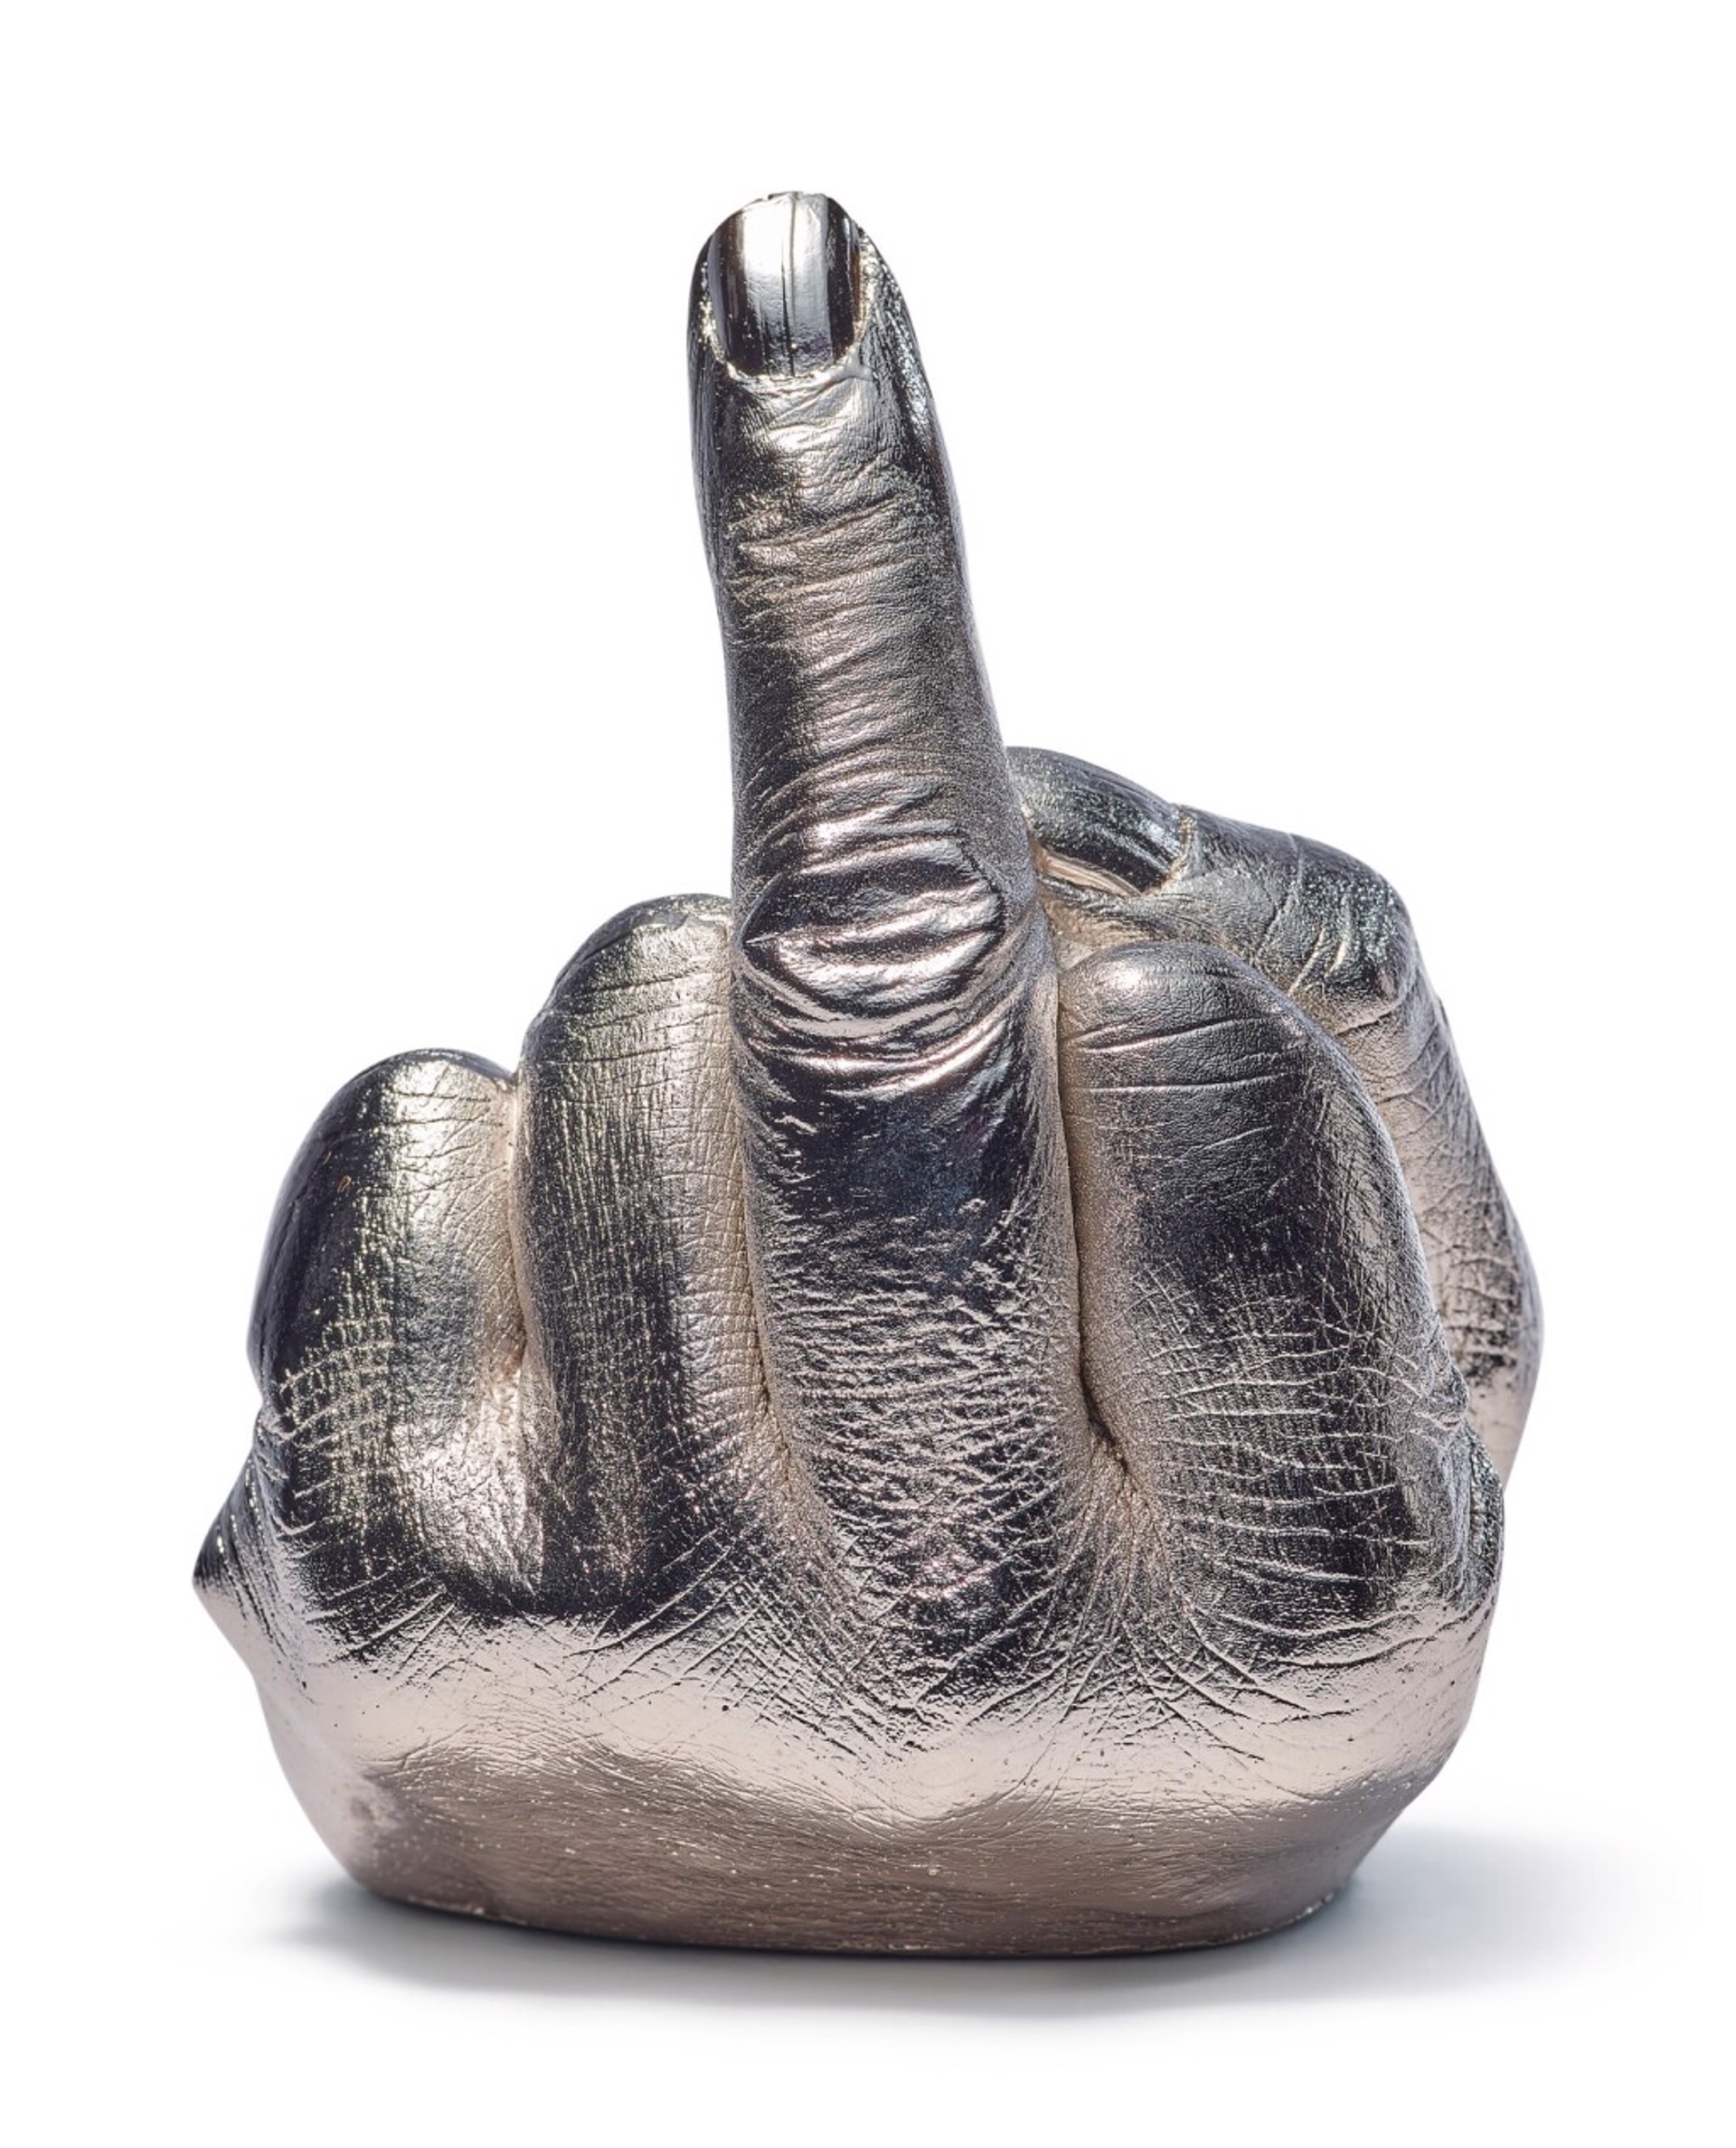 Artist's Hand by Ai Weiwei